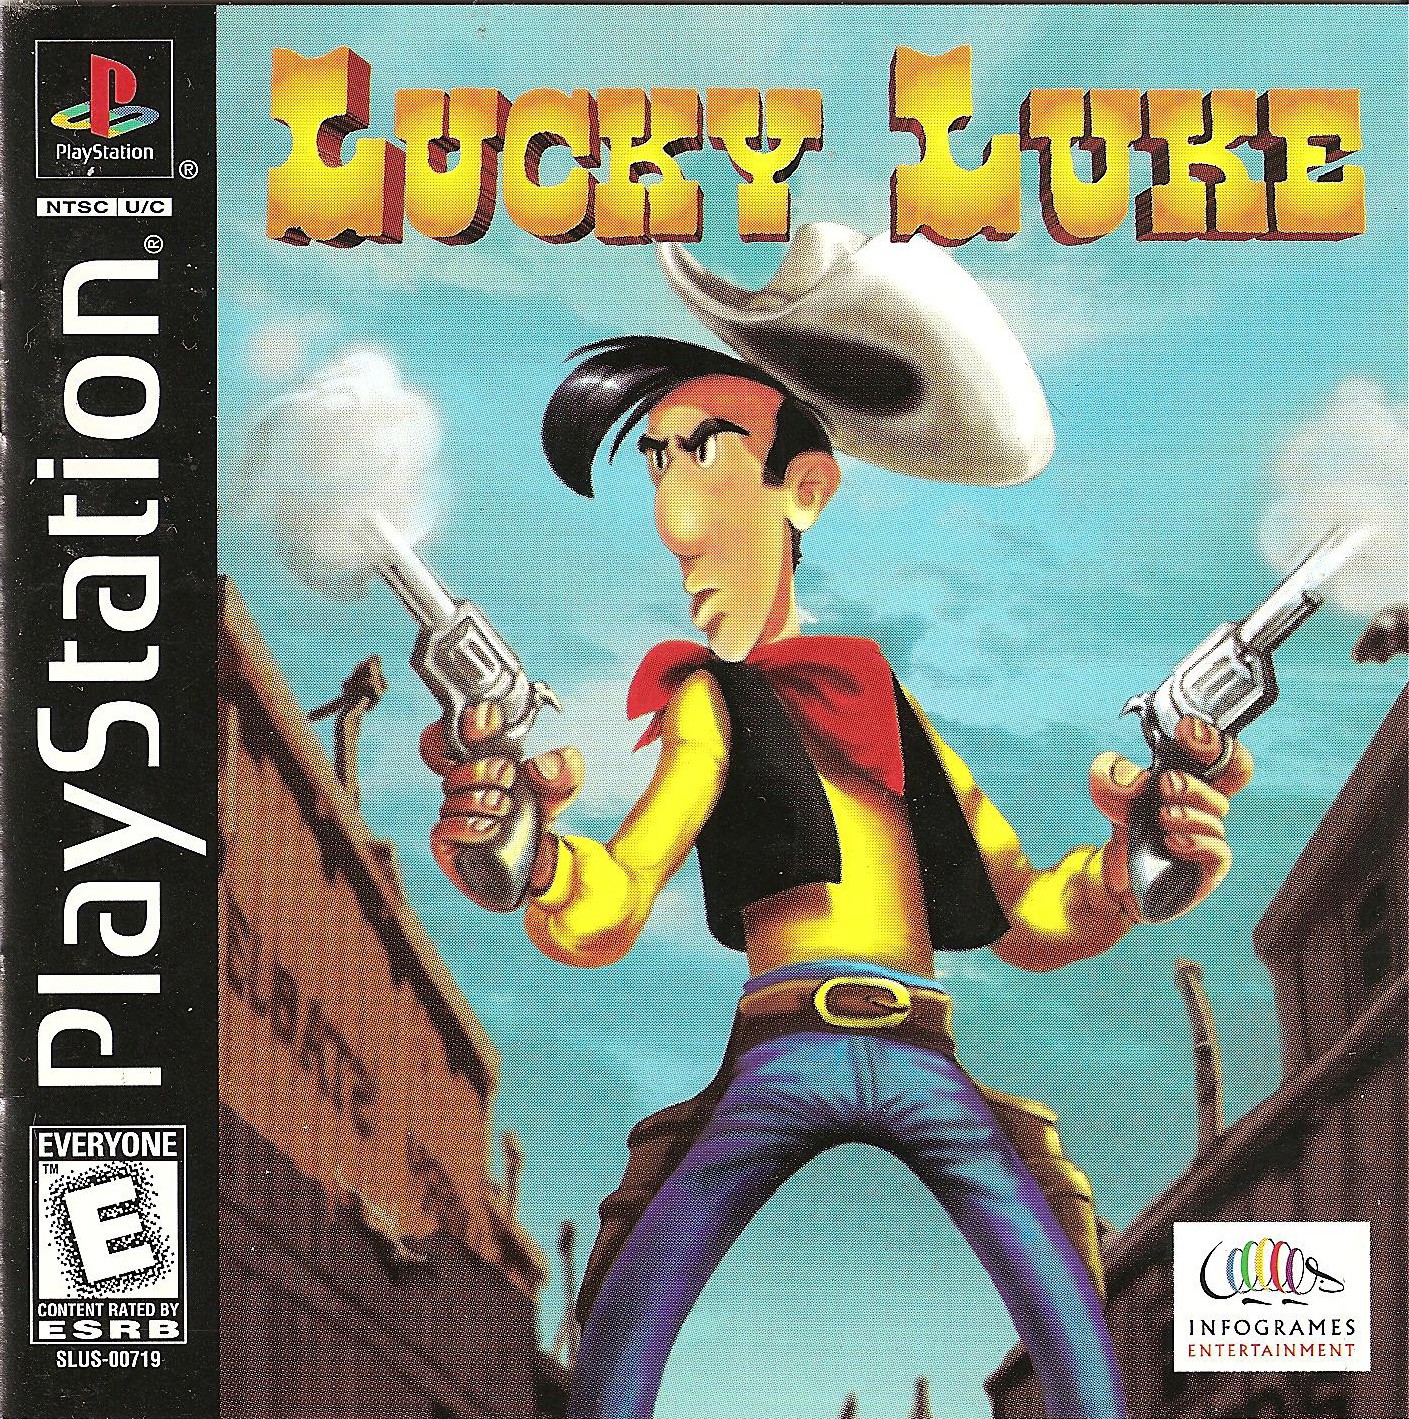 Lucky Luke PSX cover